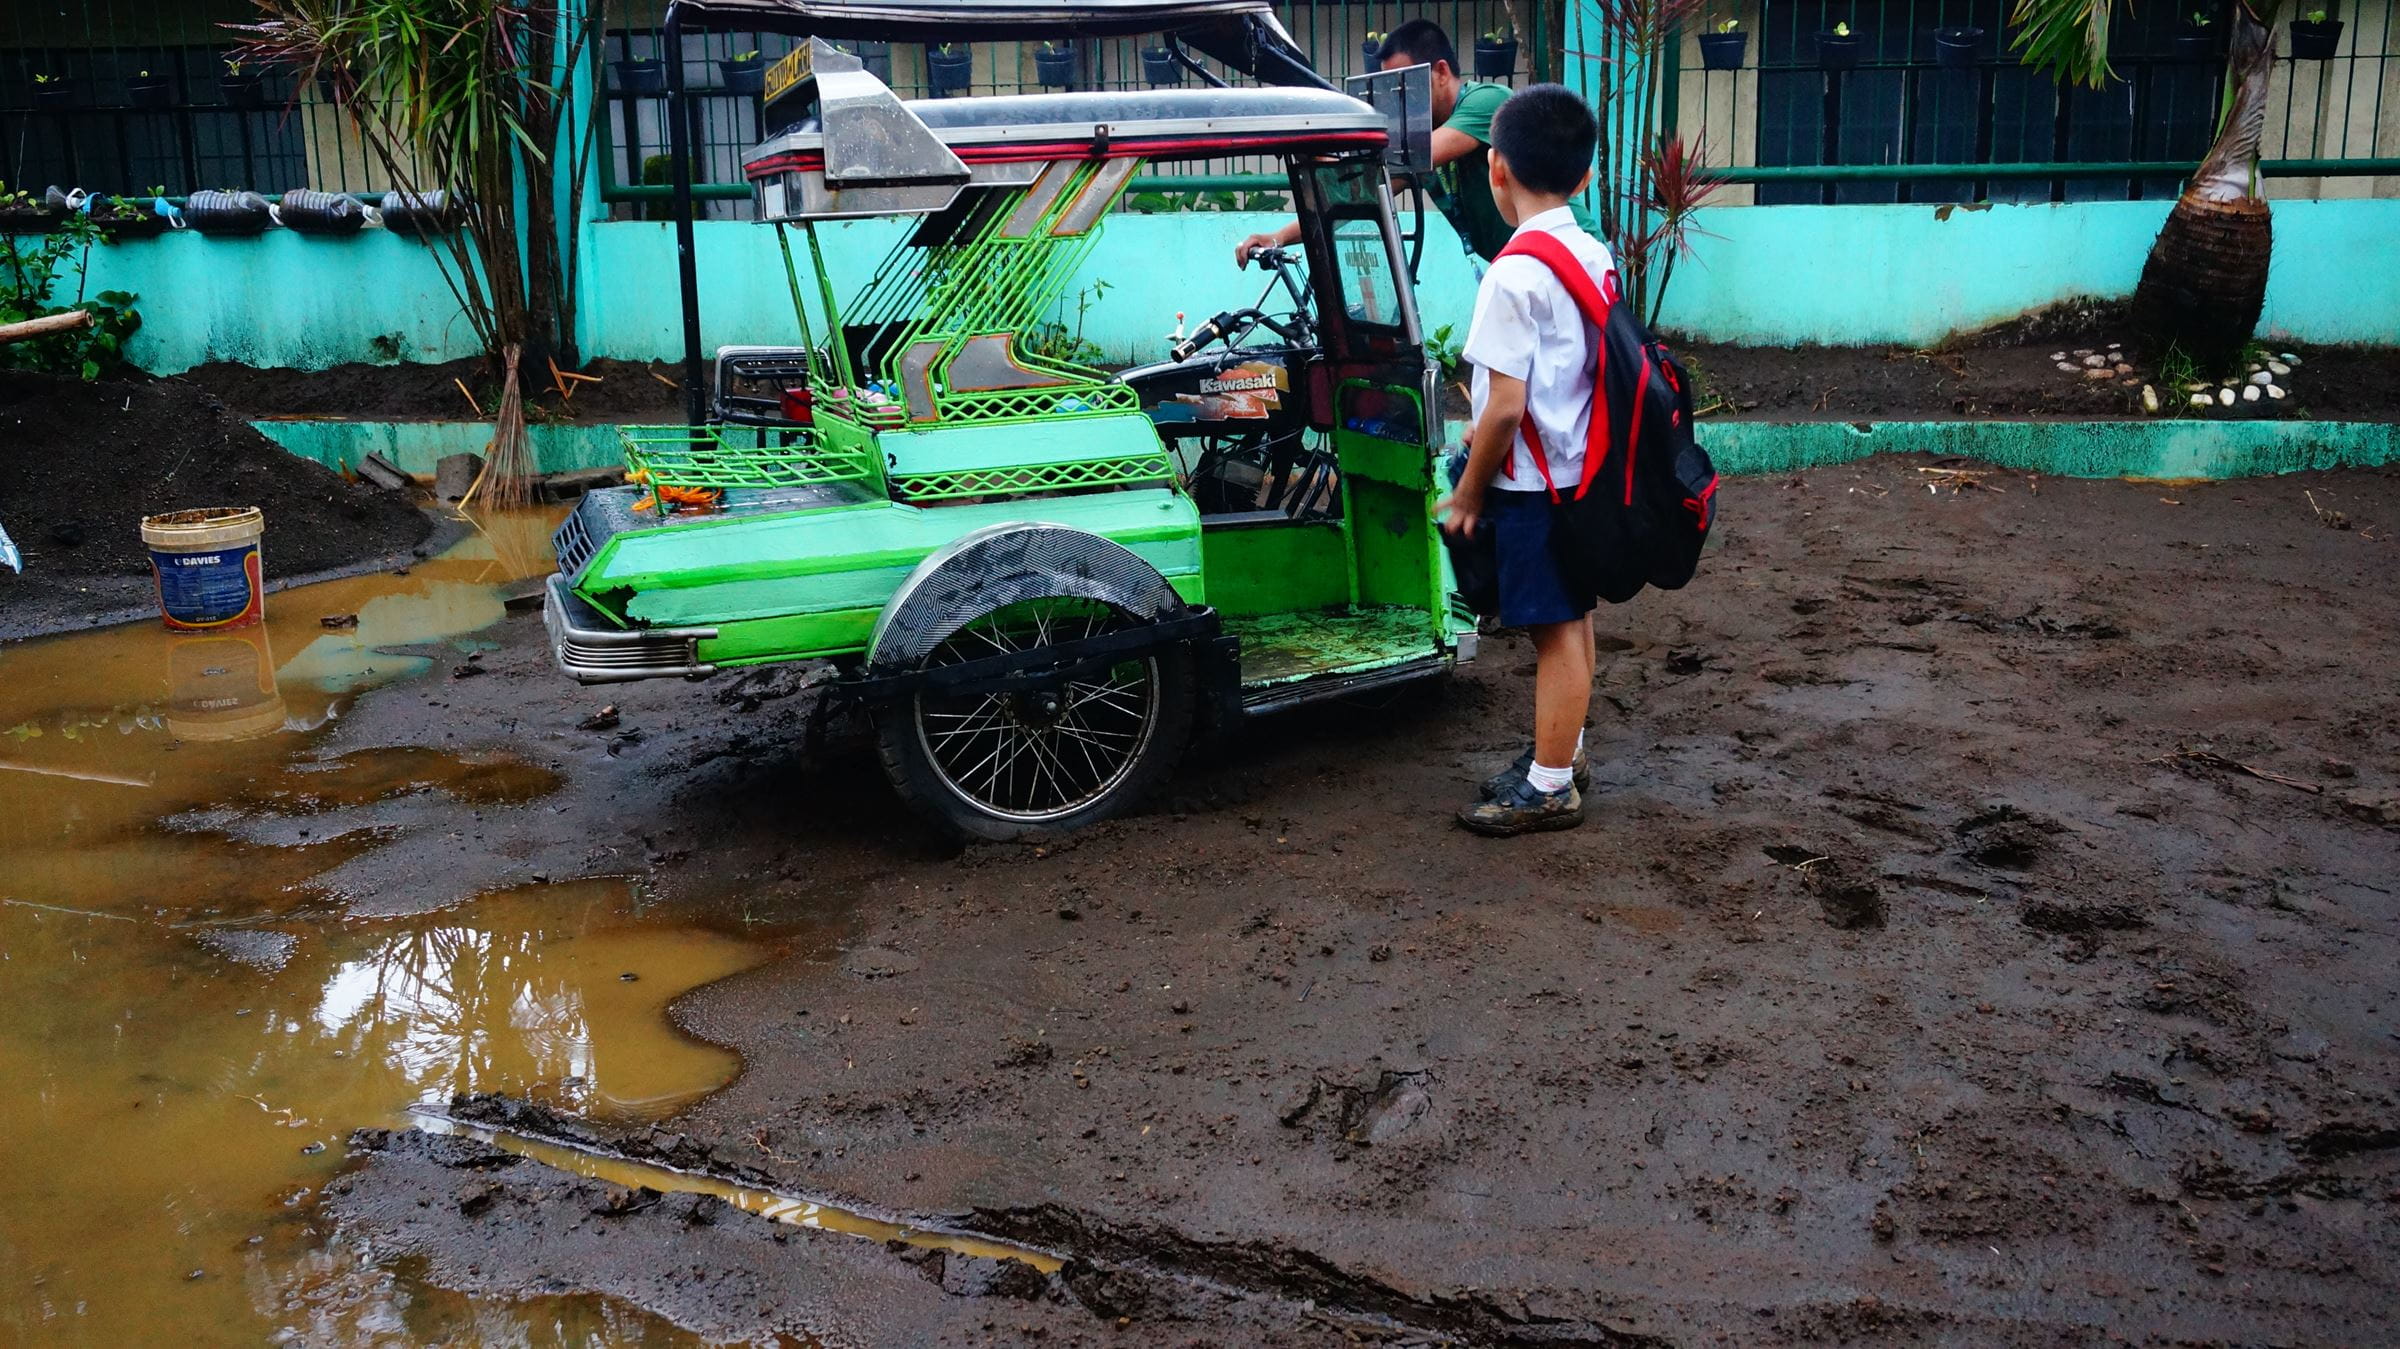 Ein Junge vor einem motorisierten Dreirad auf den Philippinen (Quelle: Dietmar Boos)